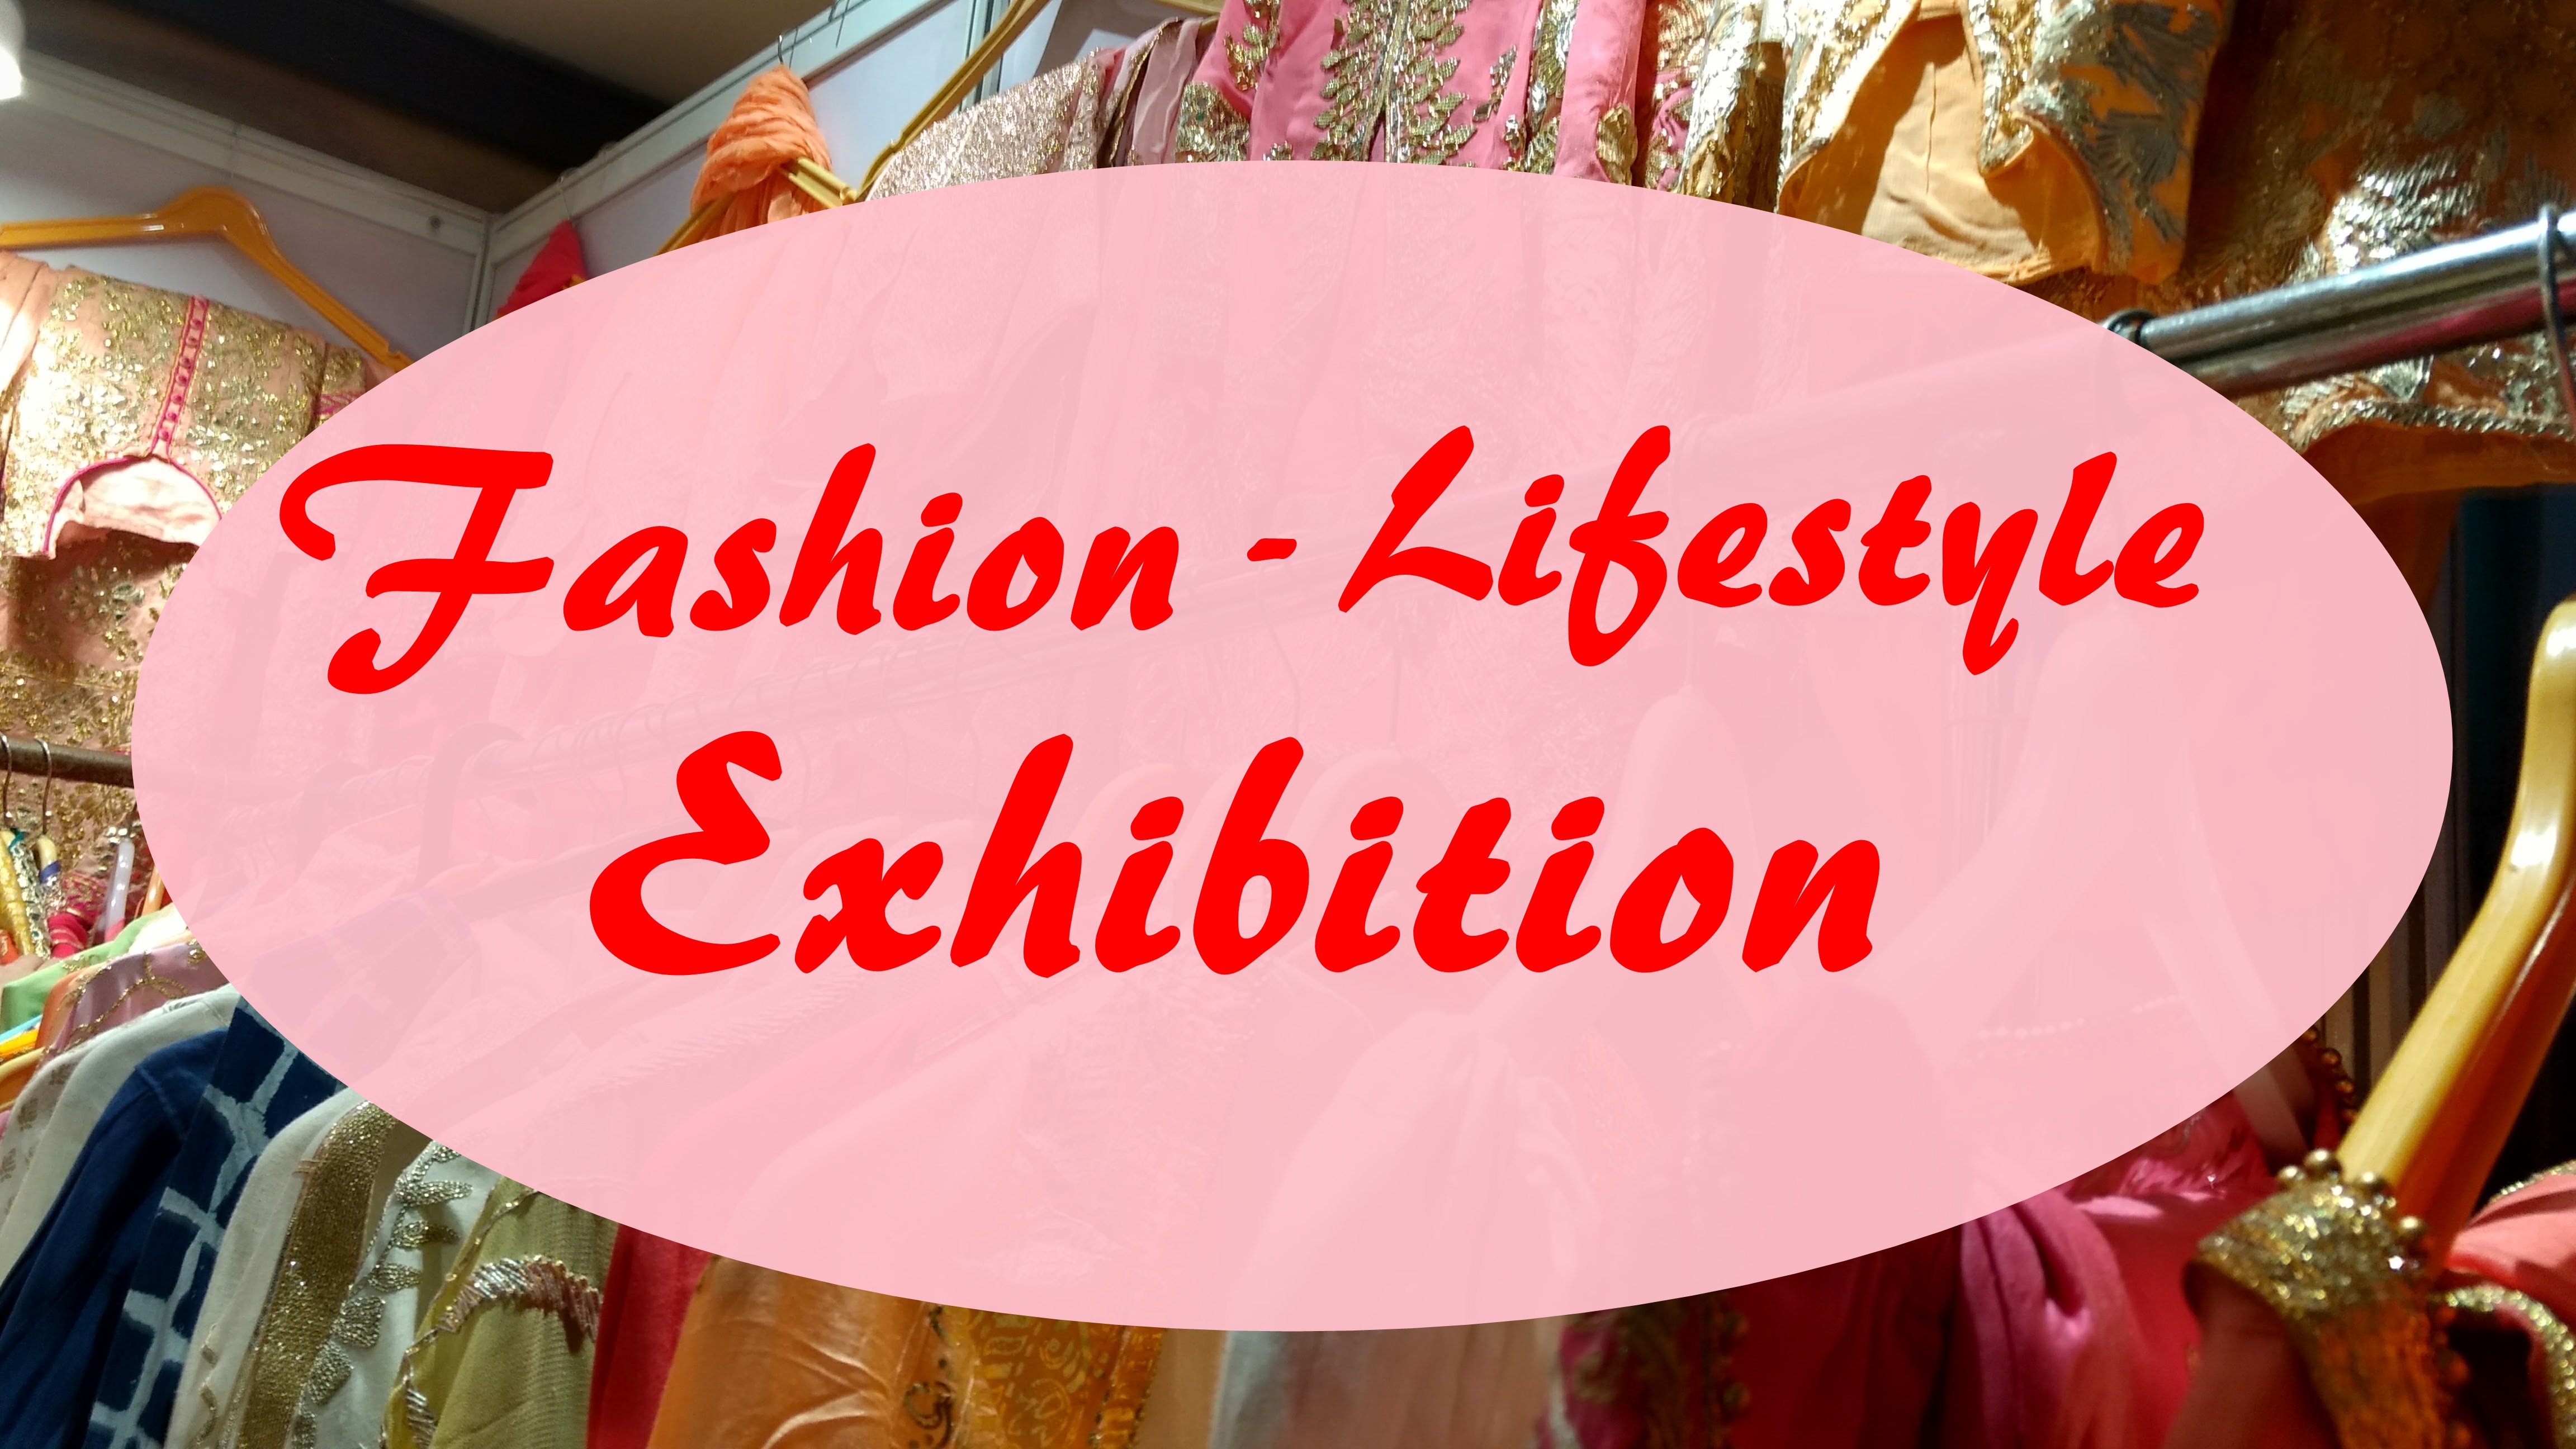 Noida Fashion Lifestyle Exhibition